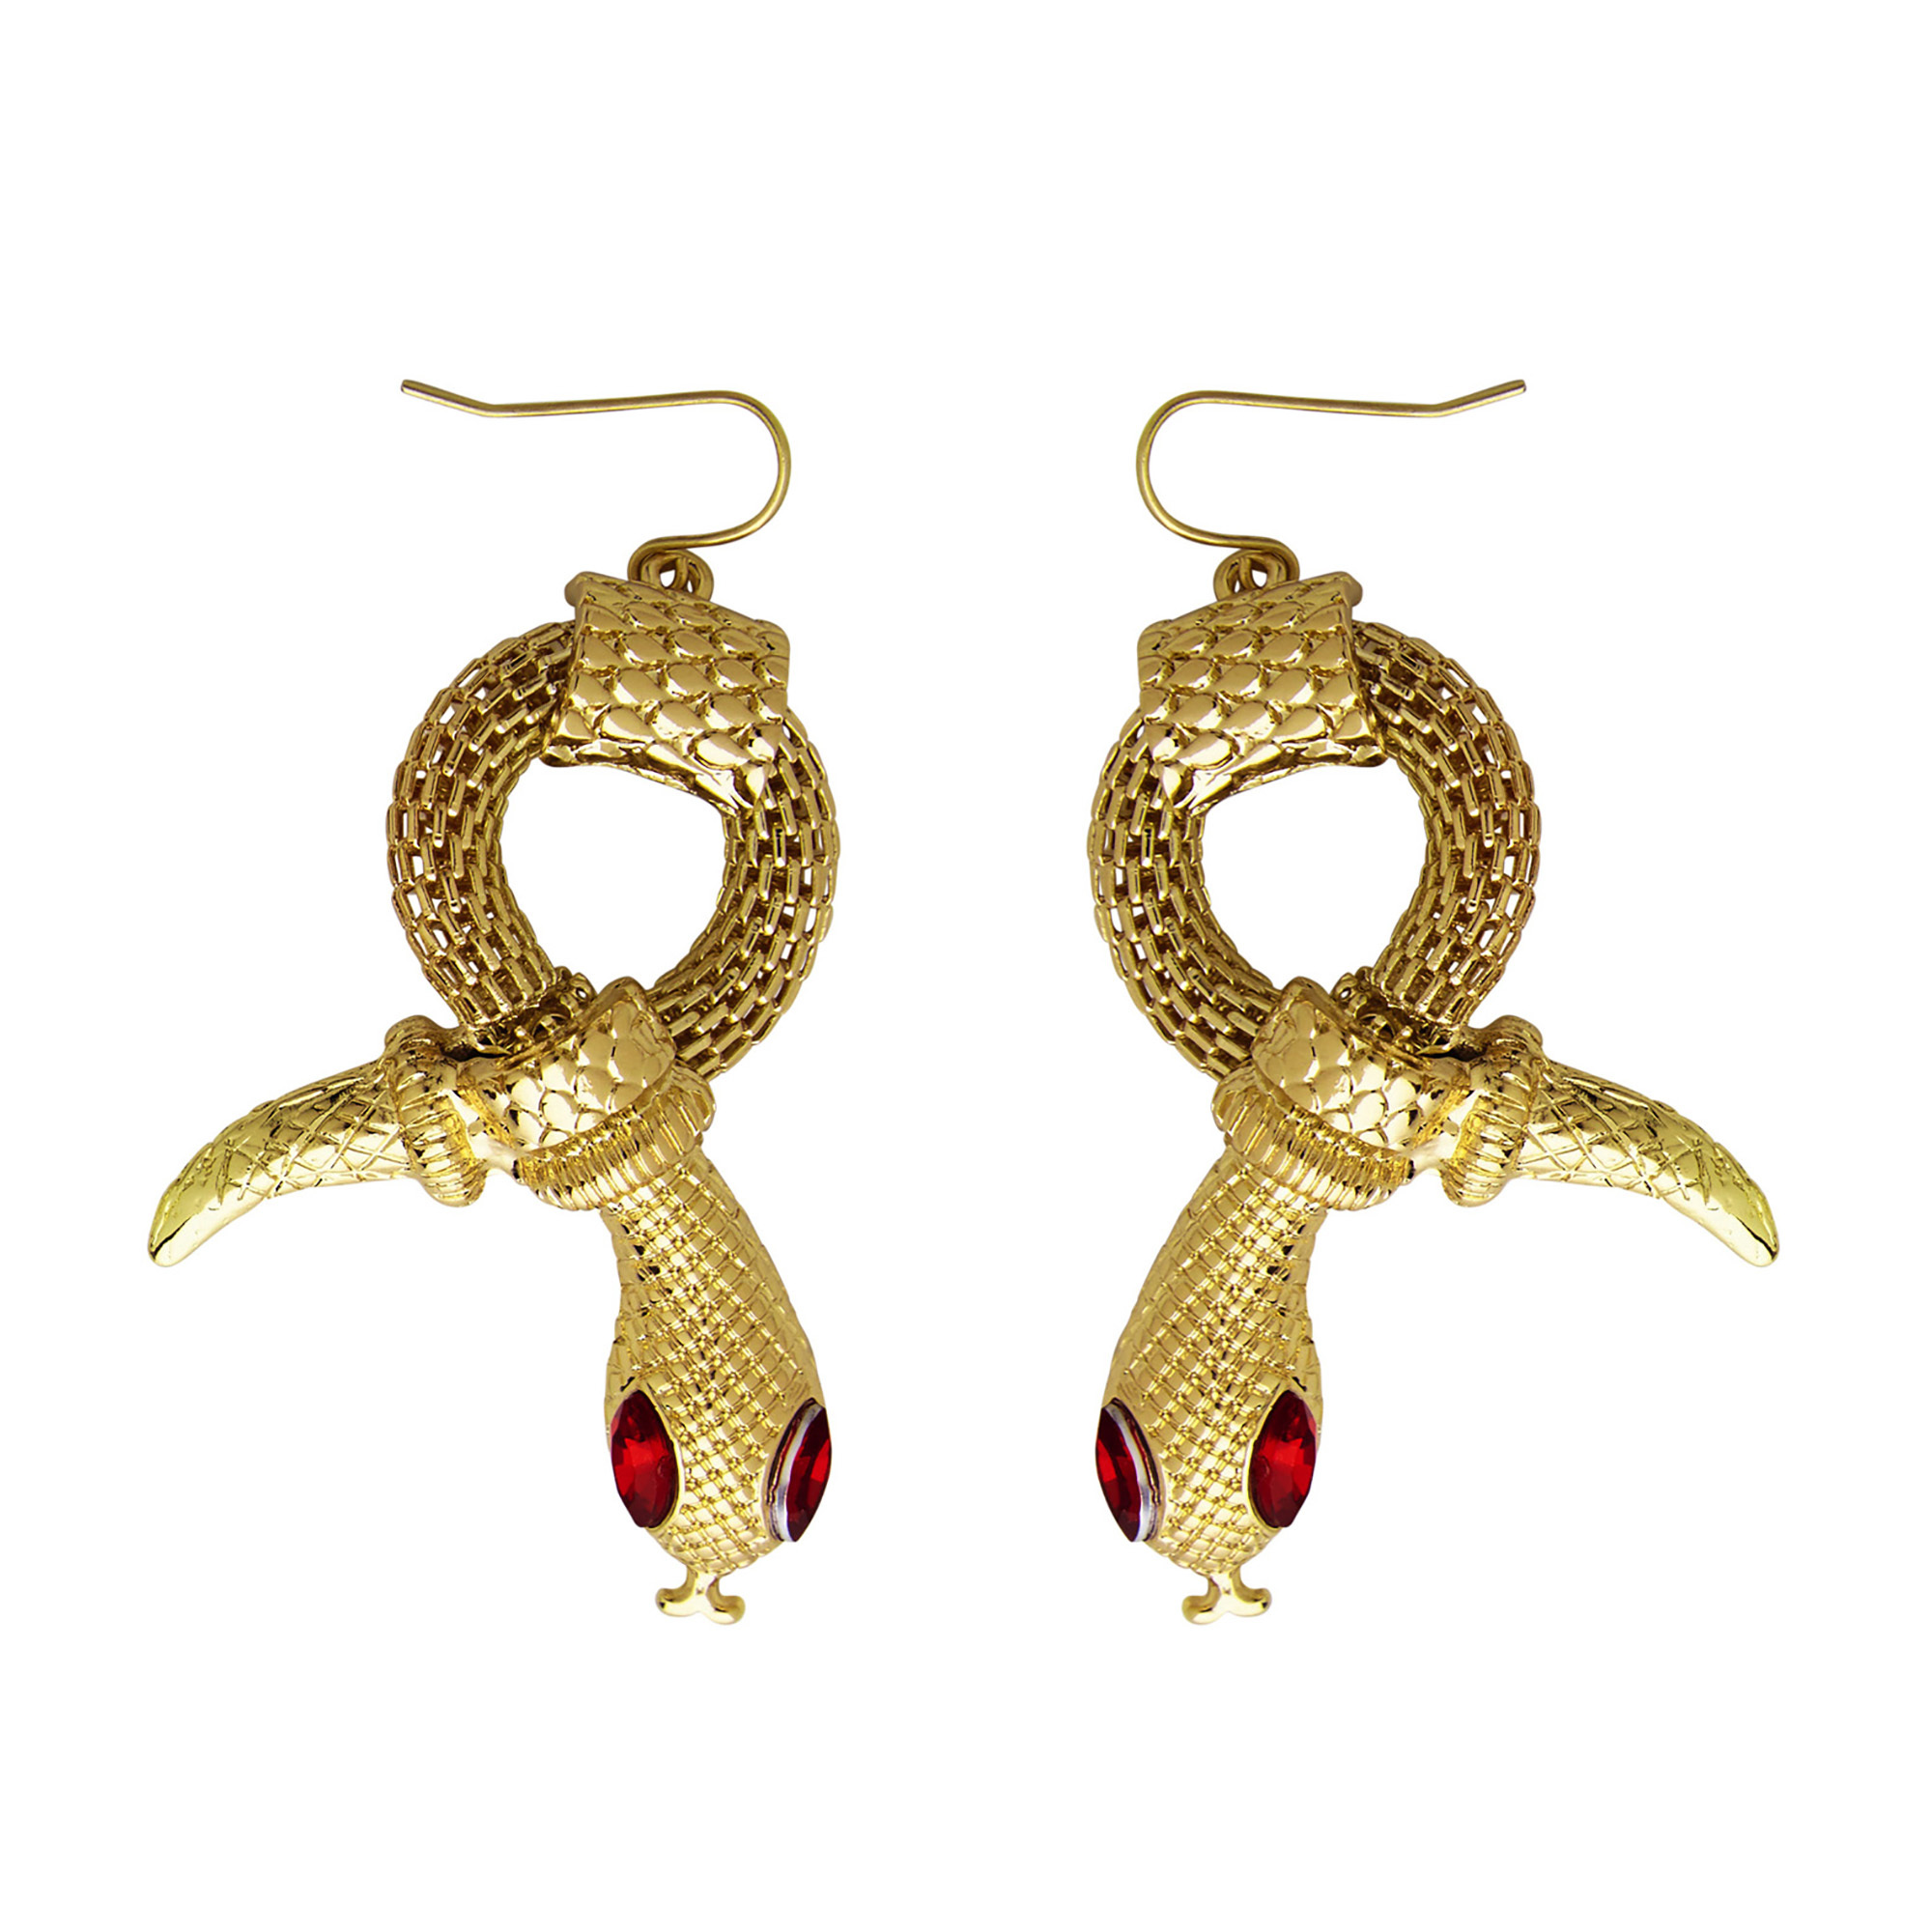 Egyptische oorbellen slang van goud met rode steen ogen